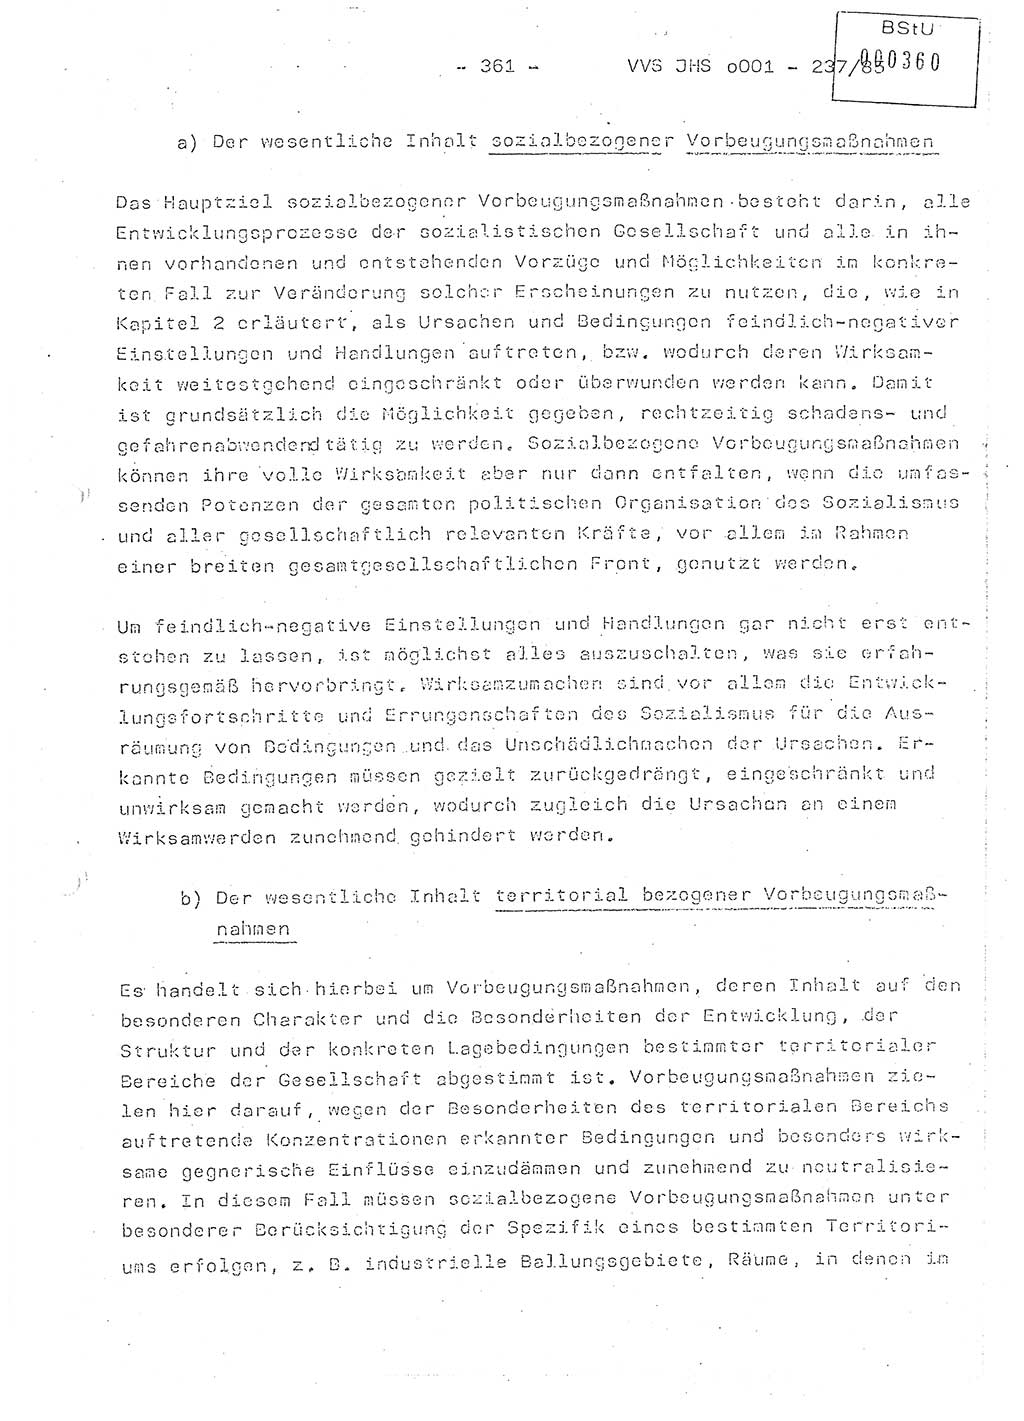 Dissertation Oberstleutnant Peter Jakulski (JHS), Oberstleutnat Christian Rudolph (HA Ⅸ), Major Horst Böttger (ZMD), Major Wolfgang Grüneberg (JHS), Major Albert Meutsch (JHS), Ministerium für Staatssicherheit (MfS) [Deutsche Demokratische Republik (DDR)], Juristische Hochschule (JHS), Vertrauliche Verschlußsache (VVS) o001-237/85, Potsdam 1985, Seite 361 (Diss. MfS DDR JHS VVS o001-237/85 1985, S. 361)